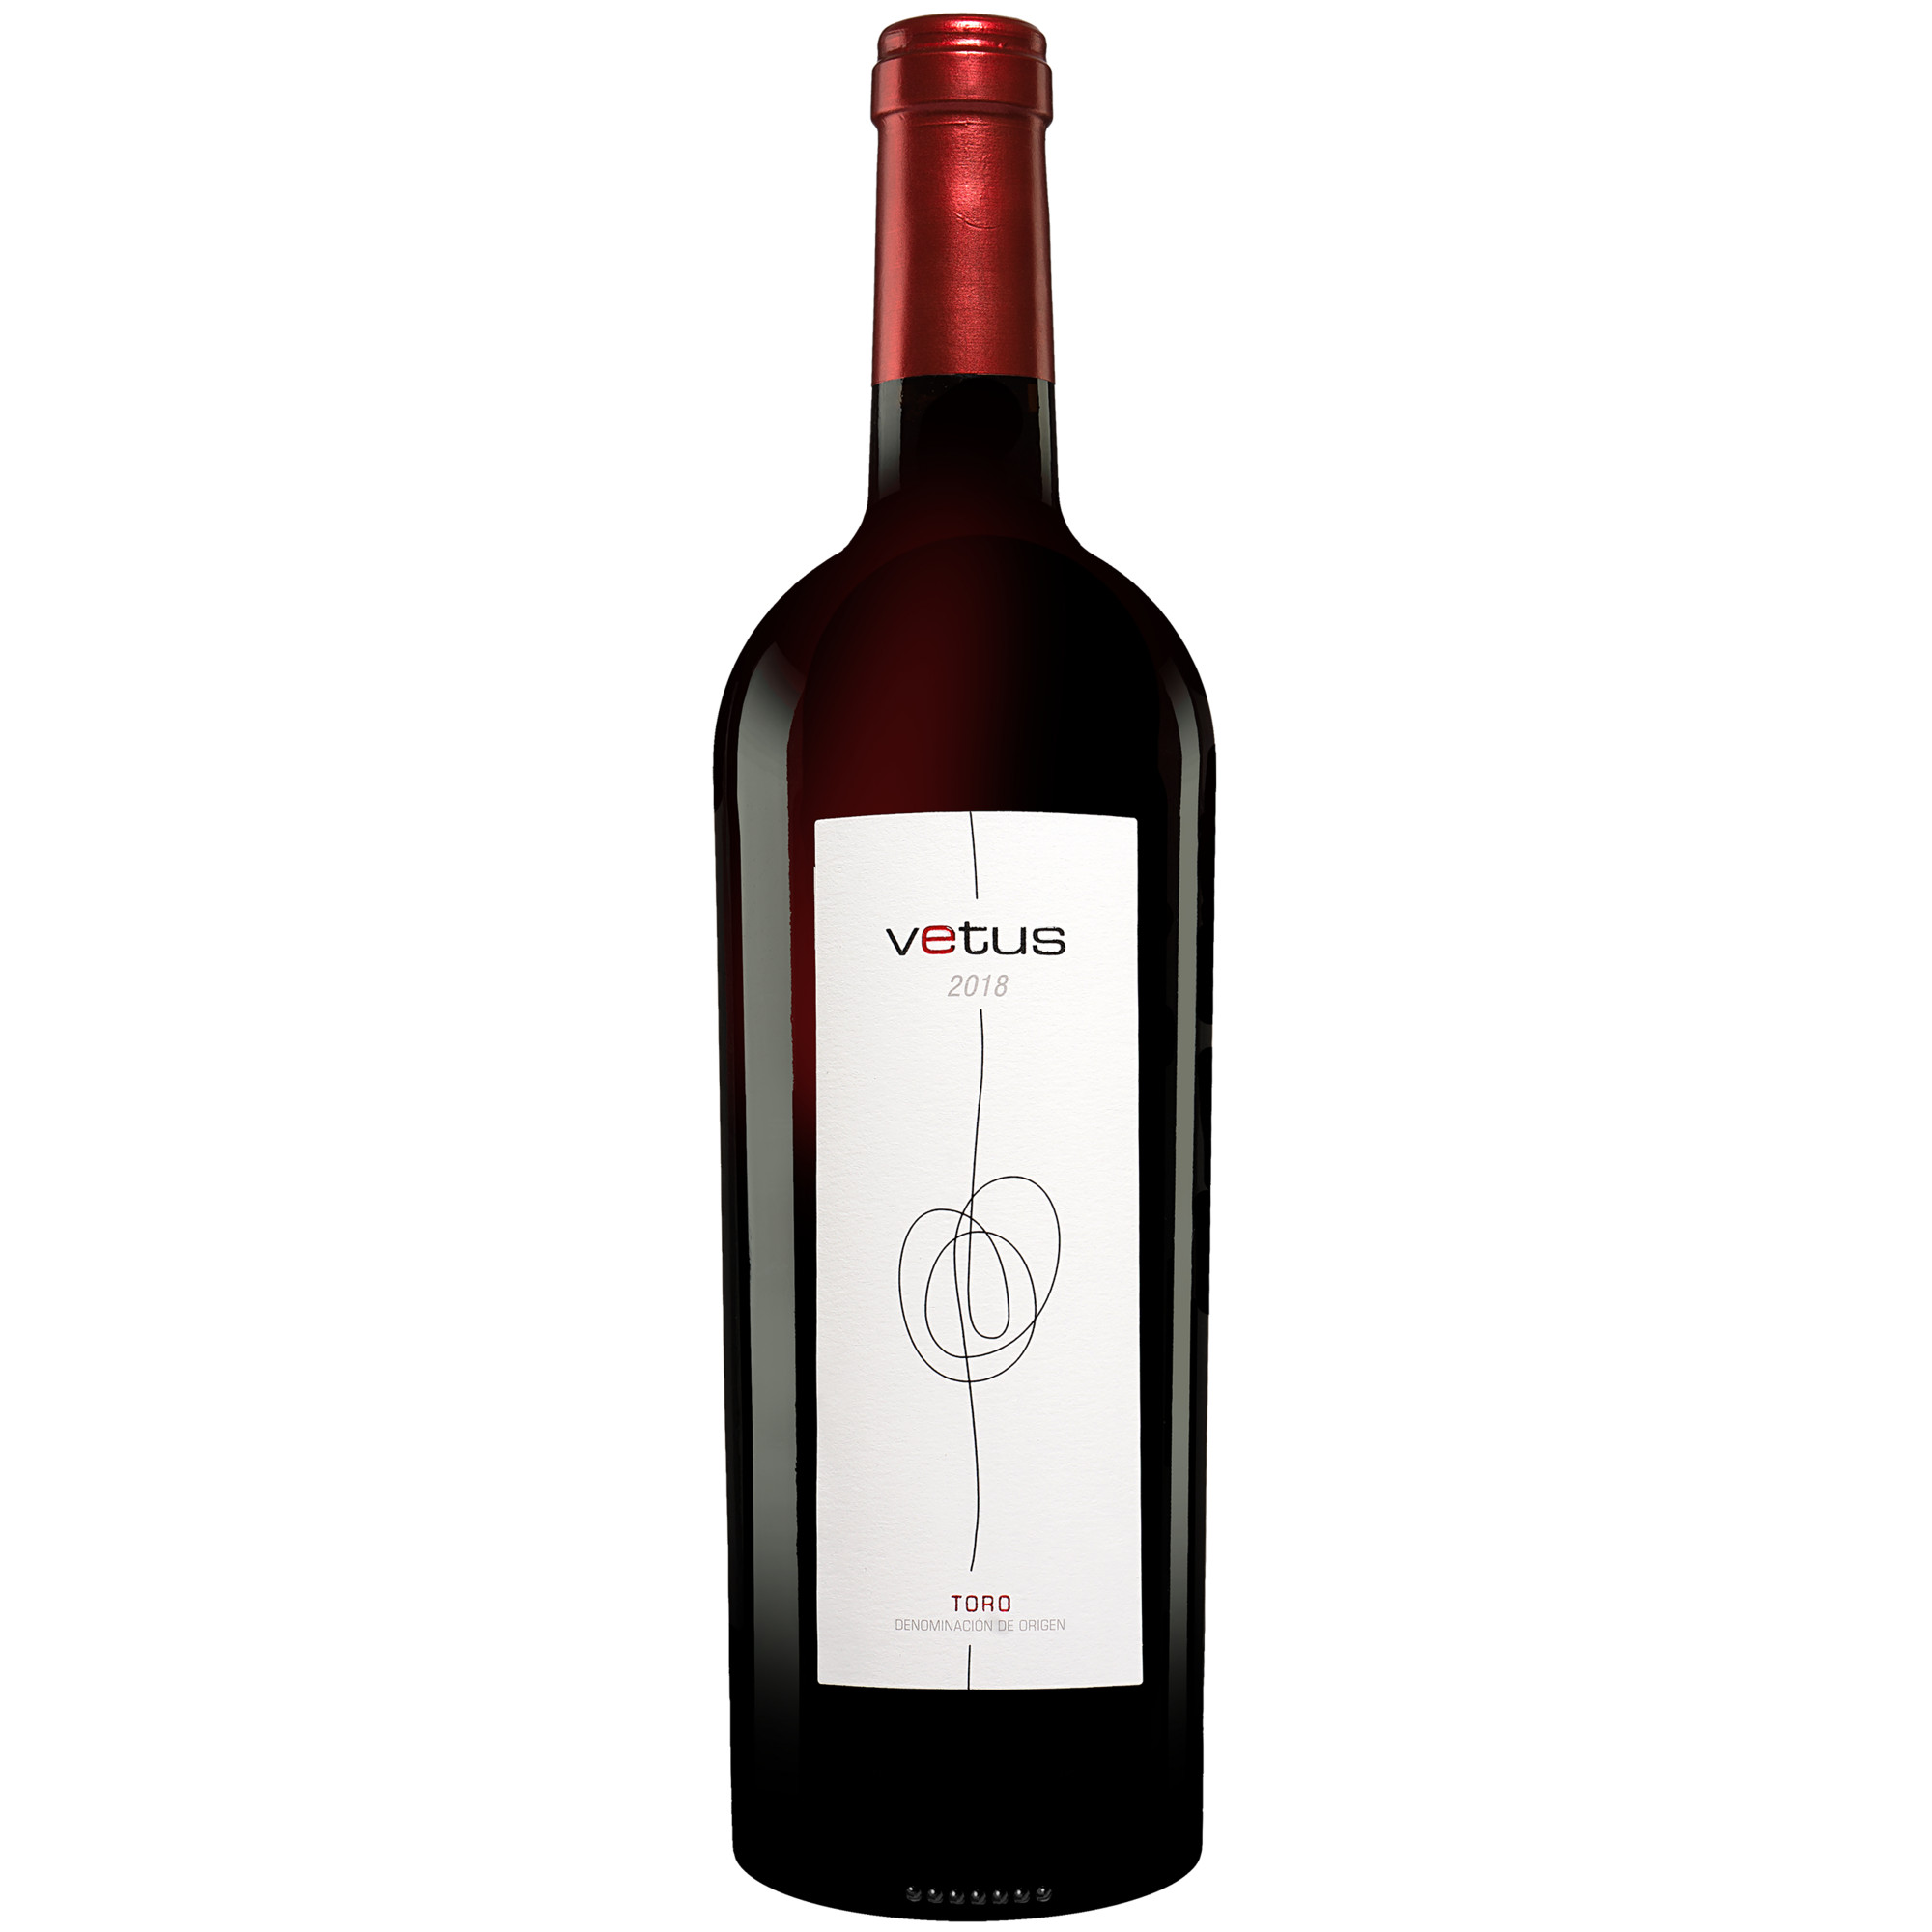 Vetus 2019  015% Vol. Rotwein Trocken aus Spanien